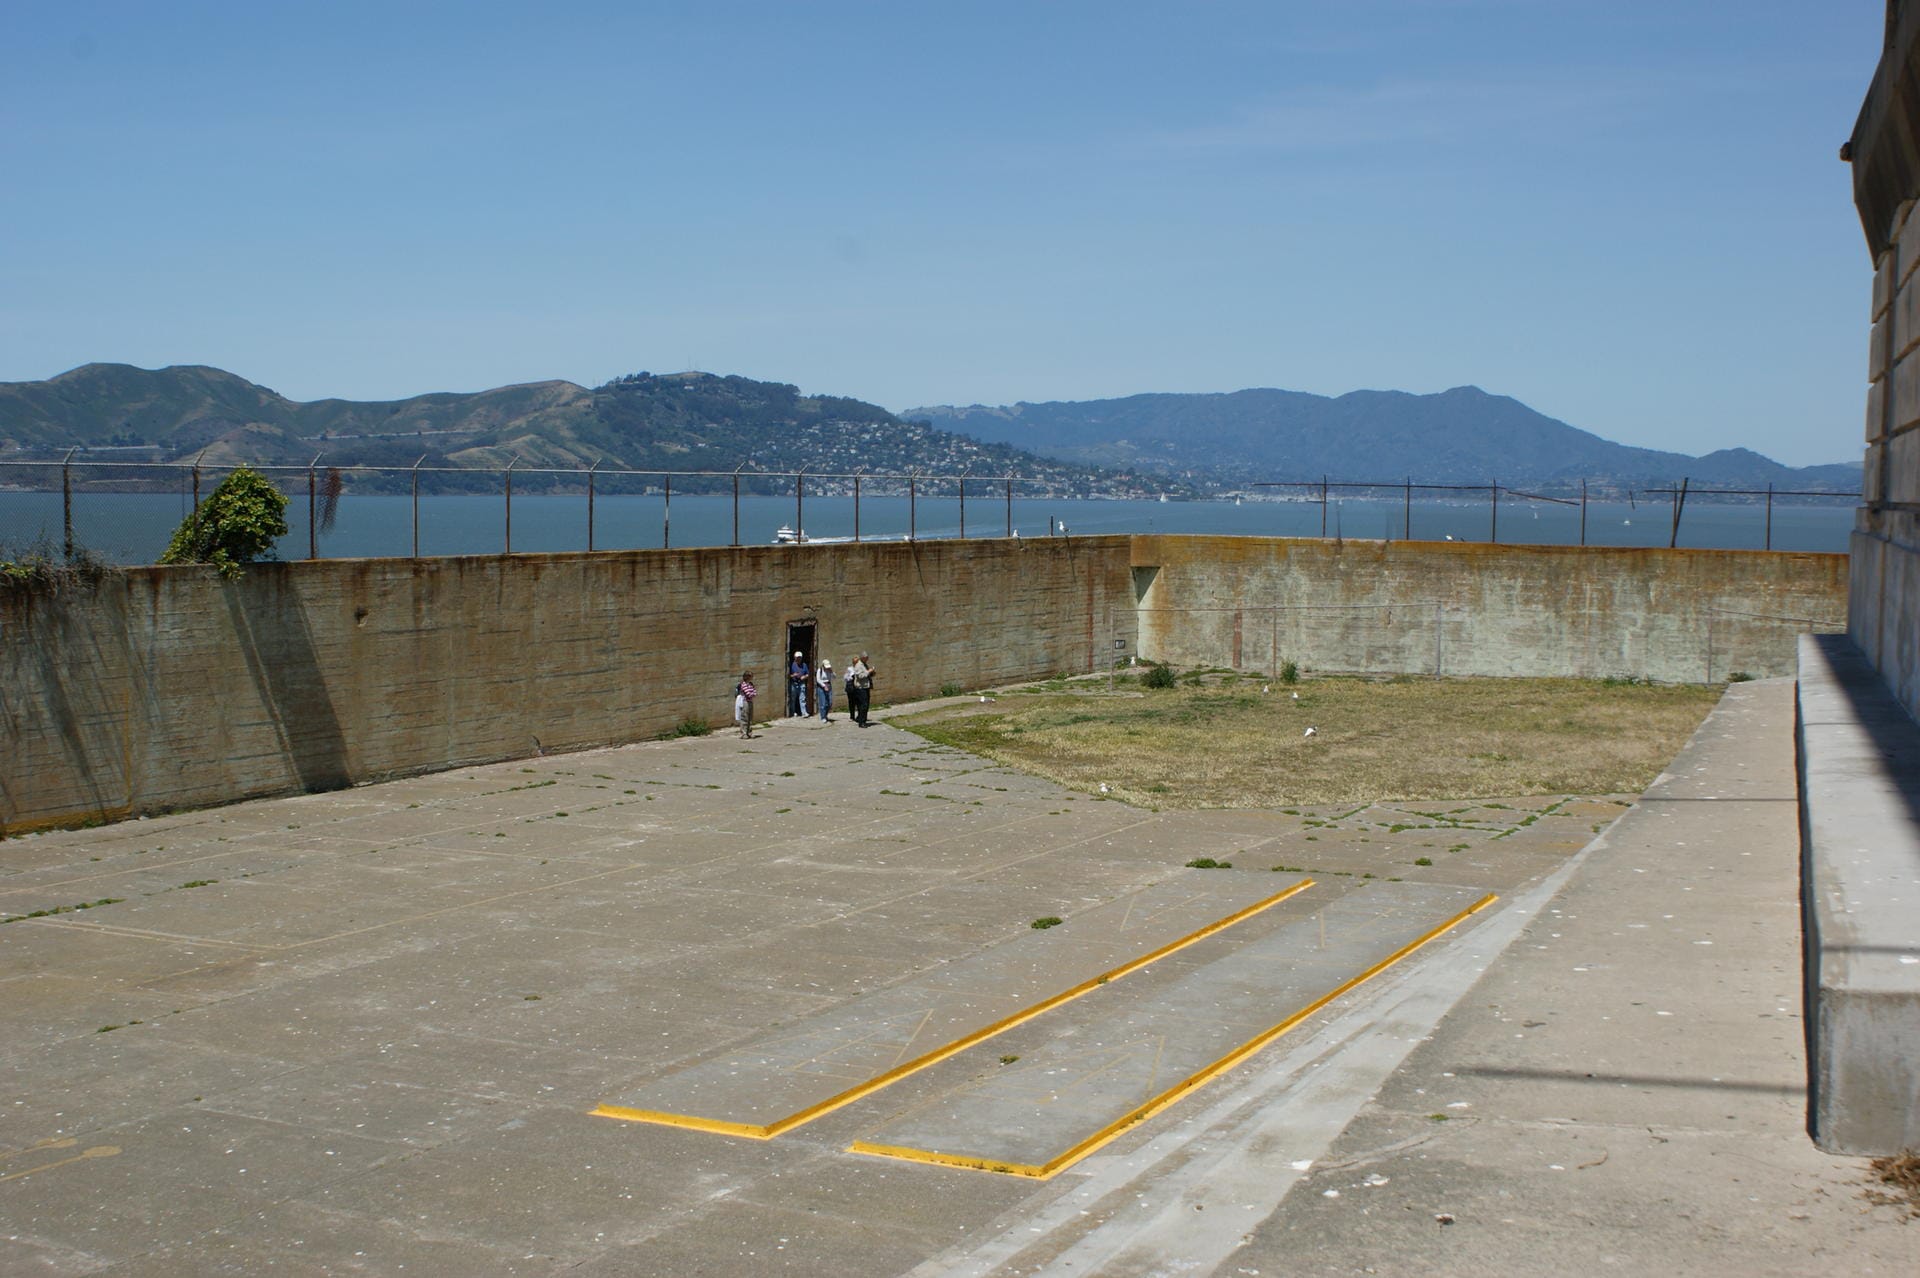 Für die heutigen Alcatraz-Besucher ist ein schöner Anblick, für die Insassen war es garantiert eine Qual - der Blick auf San Francisco.